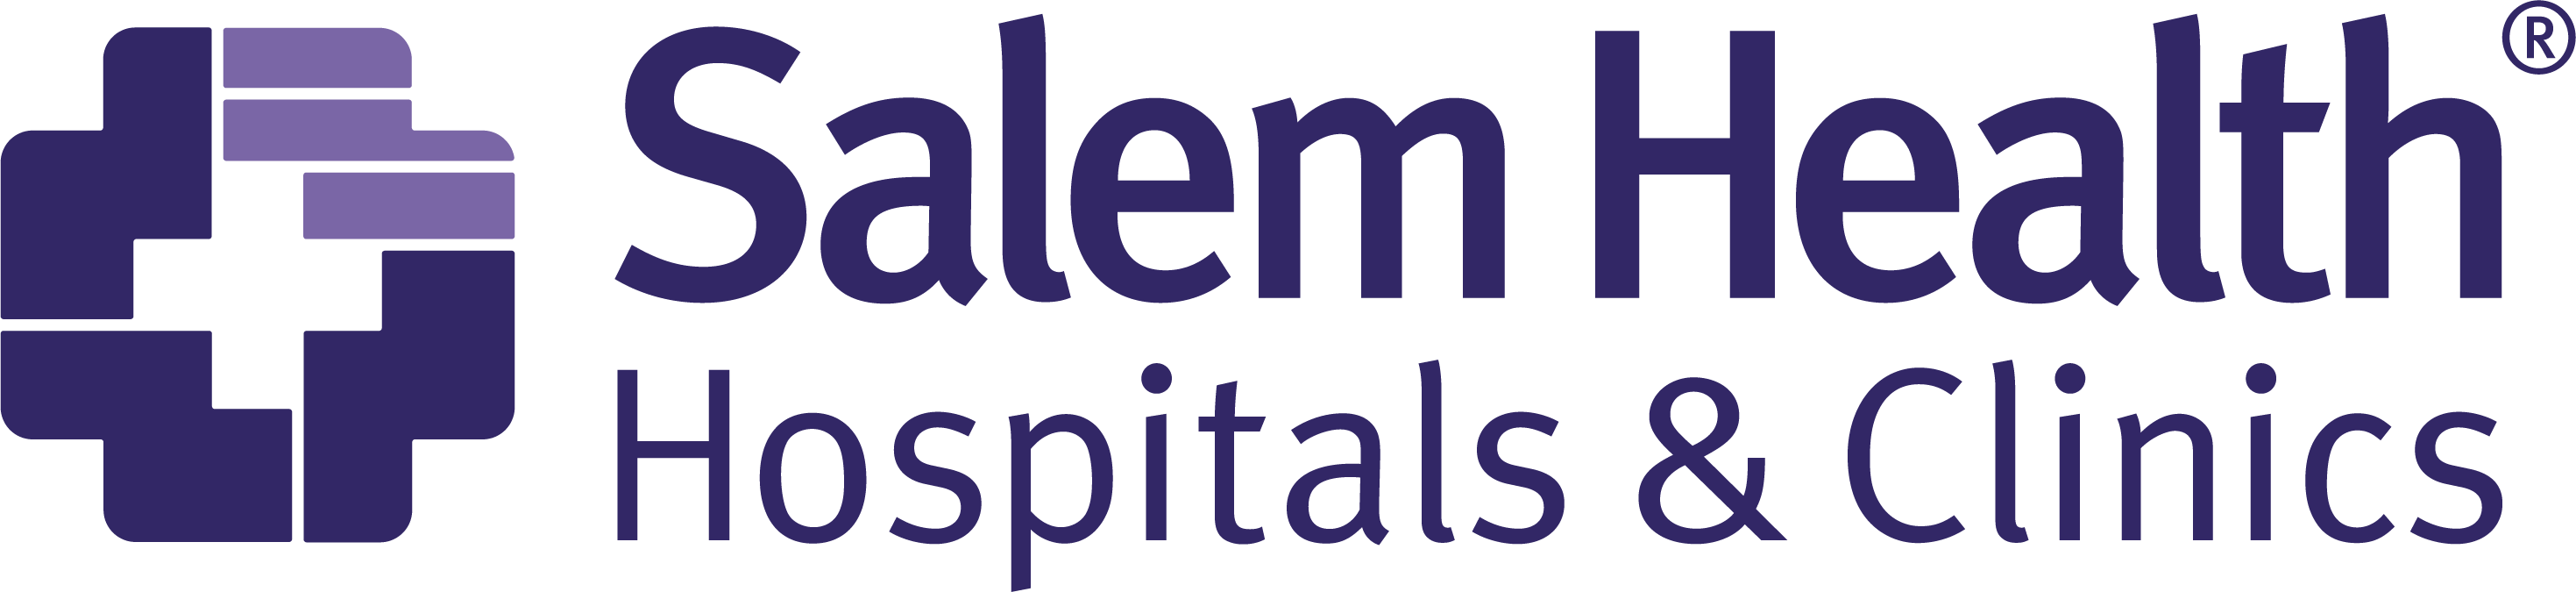 Image of Salem Health color logo